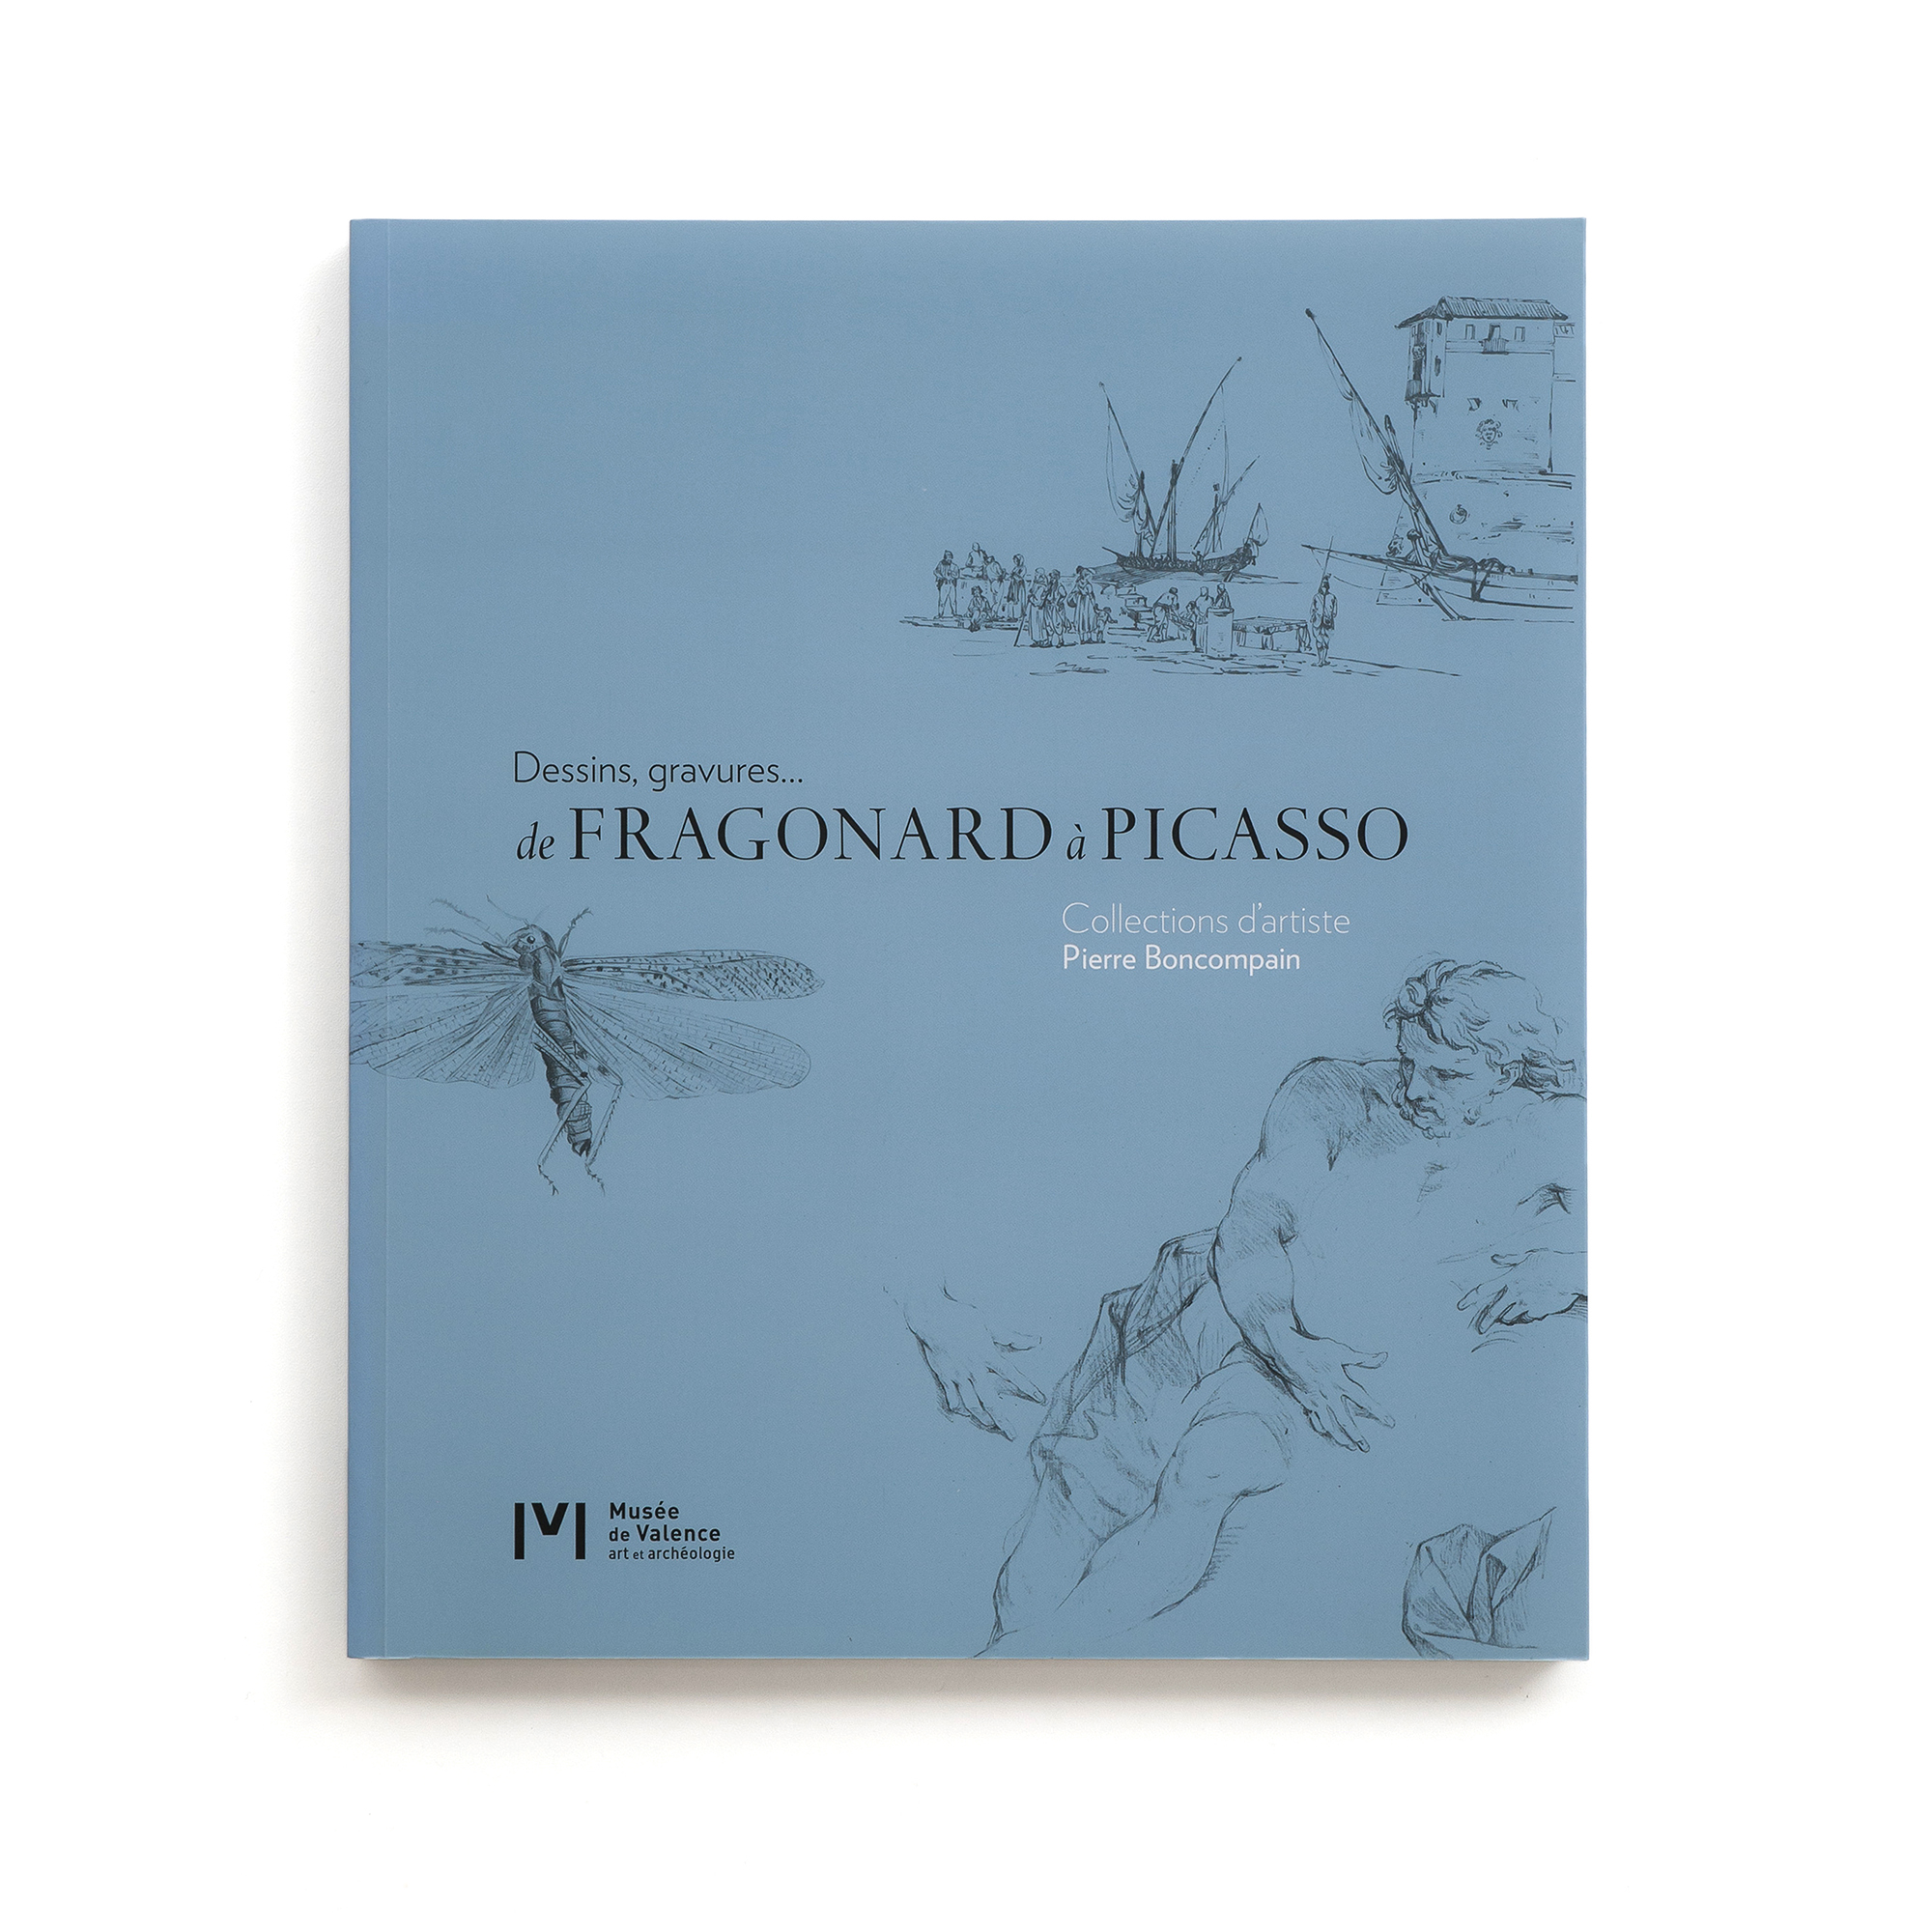   De Fragonard à Picasso  Dessins, gravures...  Pierre Boncompain  Musée de Valence 250 pages 